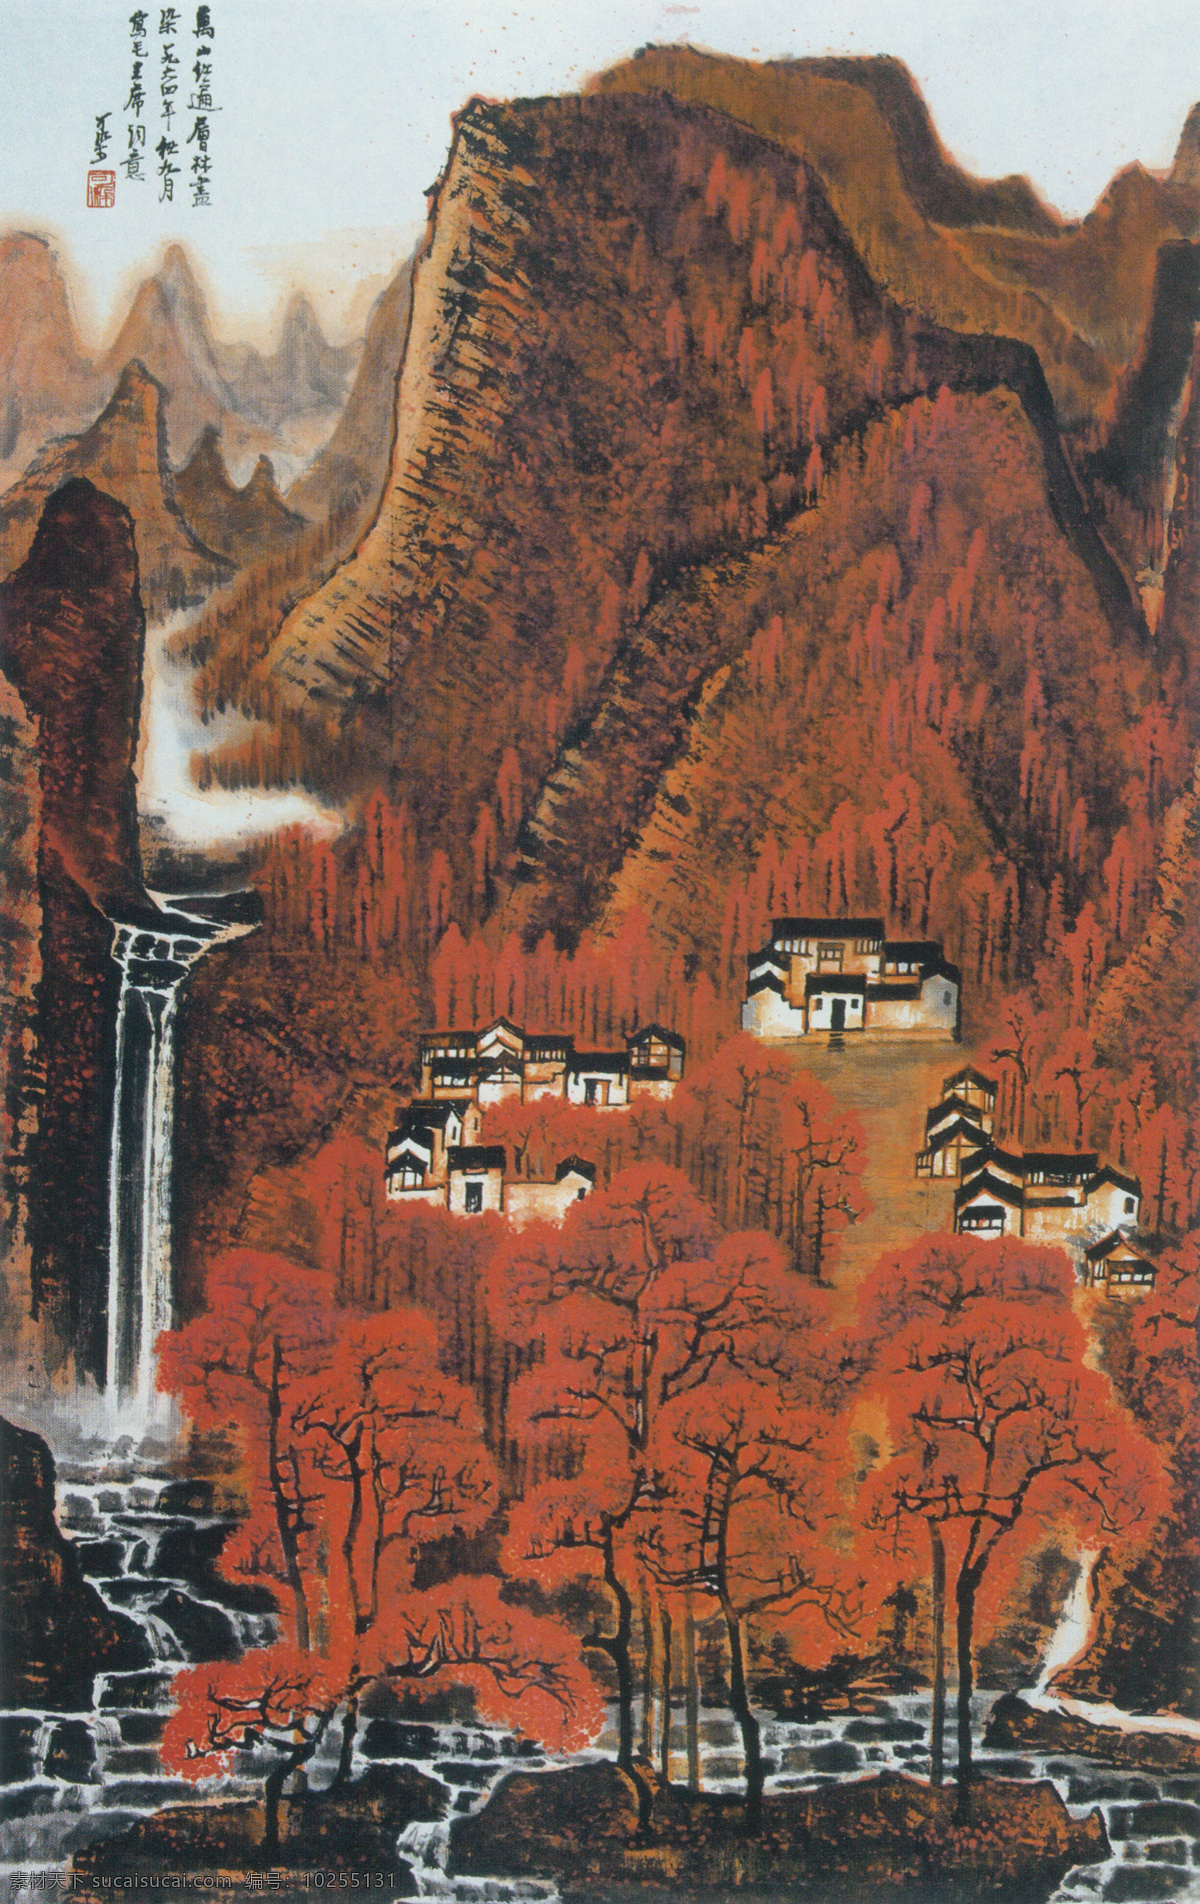 万山 红遍 图 山水 山峦 山林 红枫 溪流 中国 现代 篇 文化艺术 绘画书法